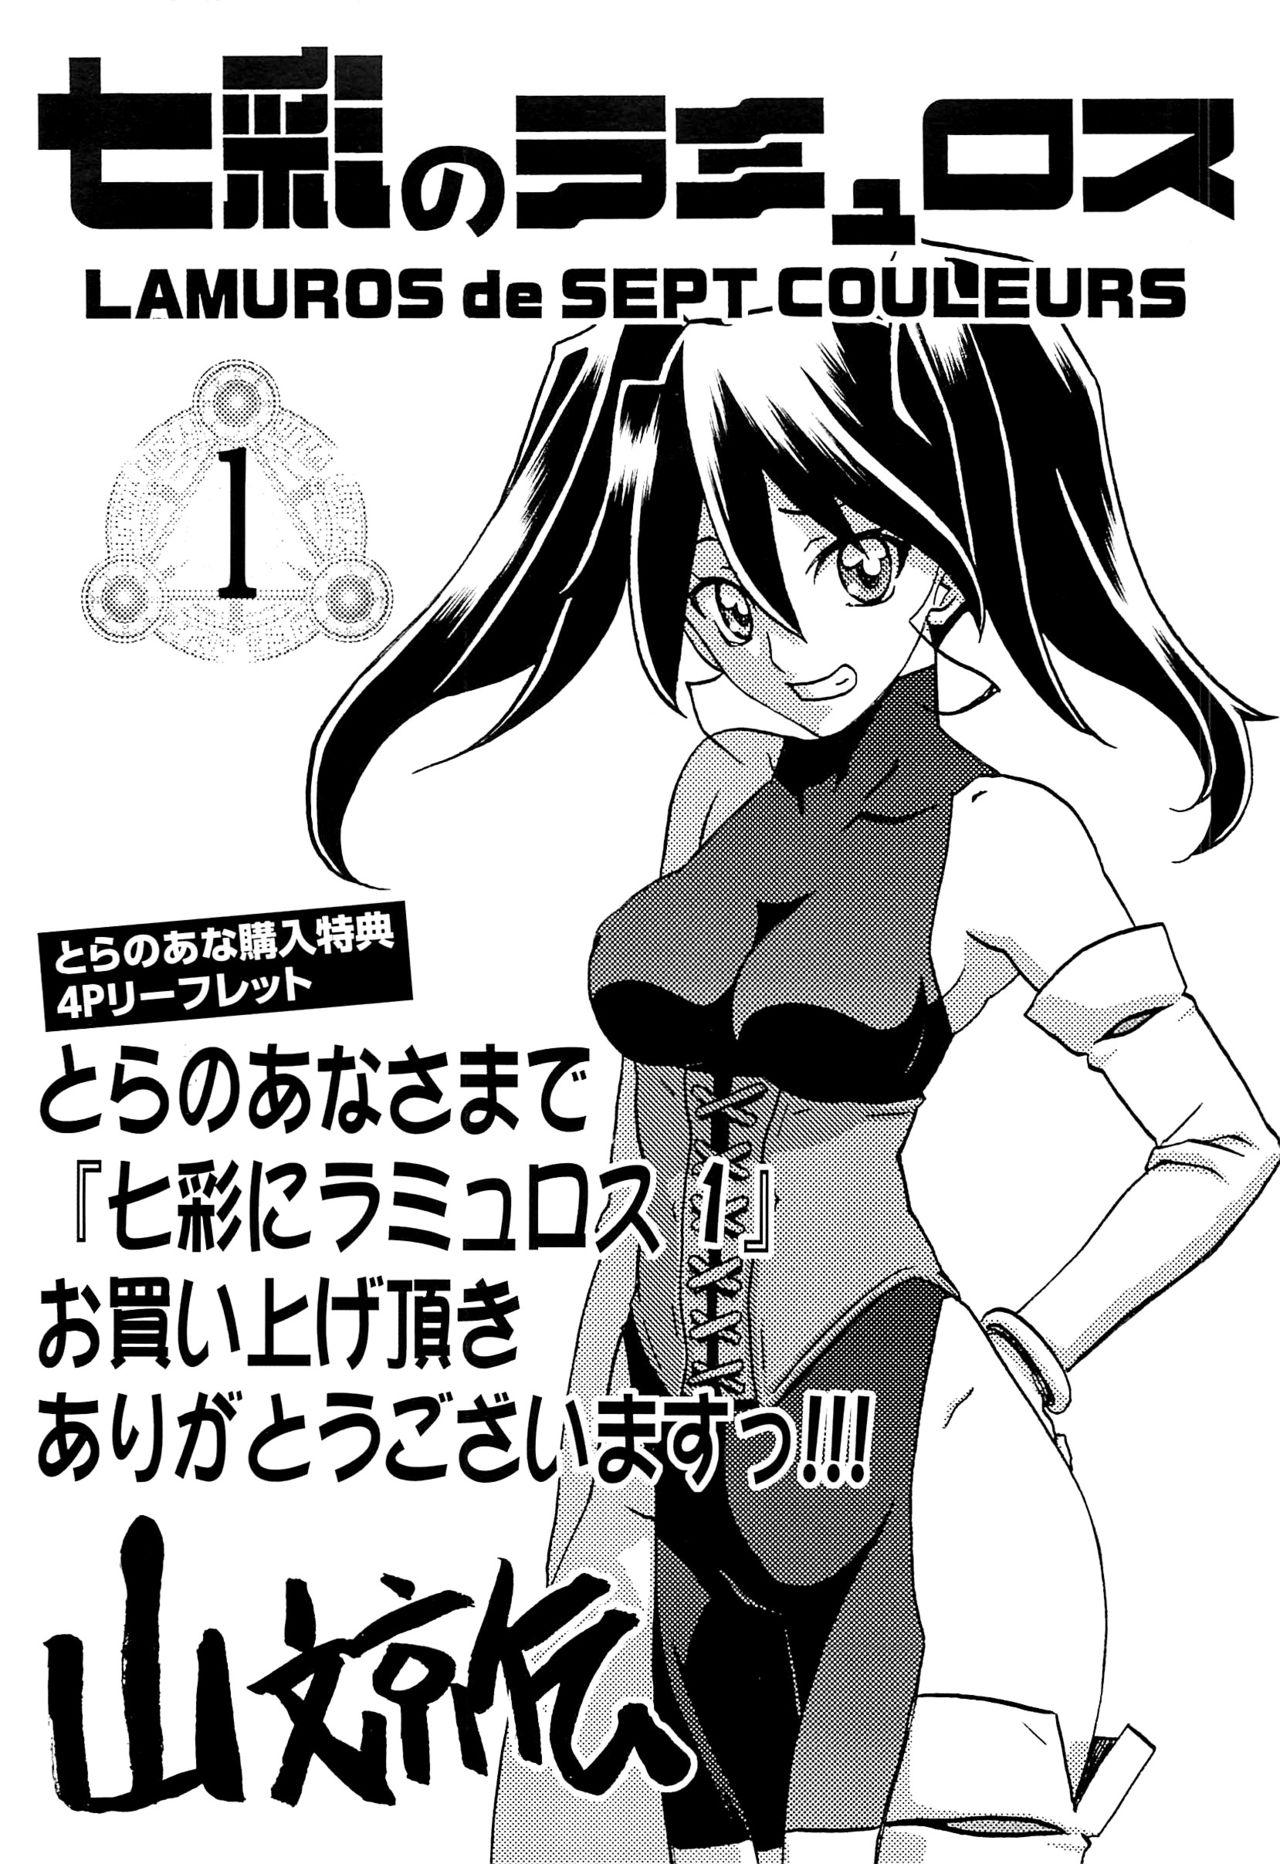 Shichisai no Lamuros Vol.1 Toranoana Tokuten 4P Leaflet 0